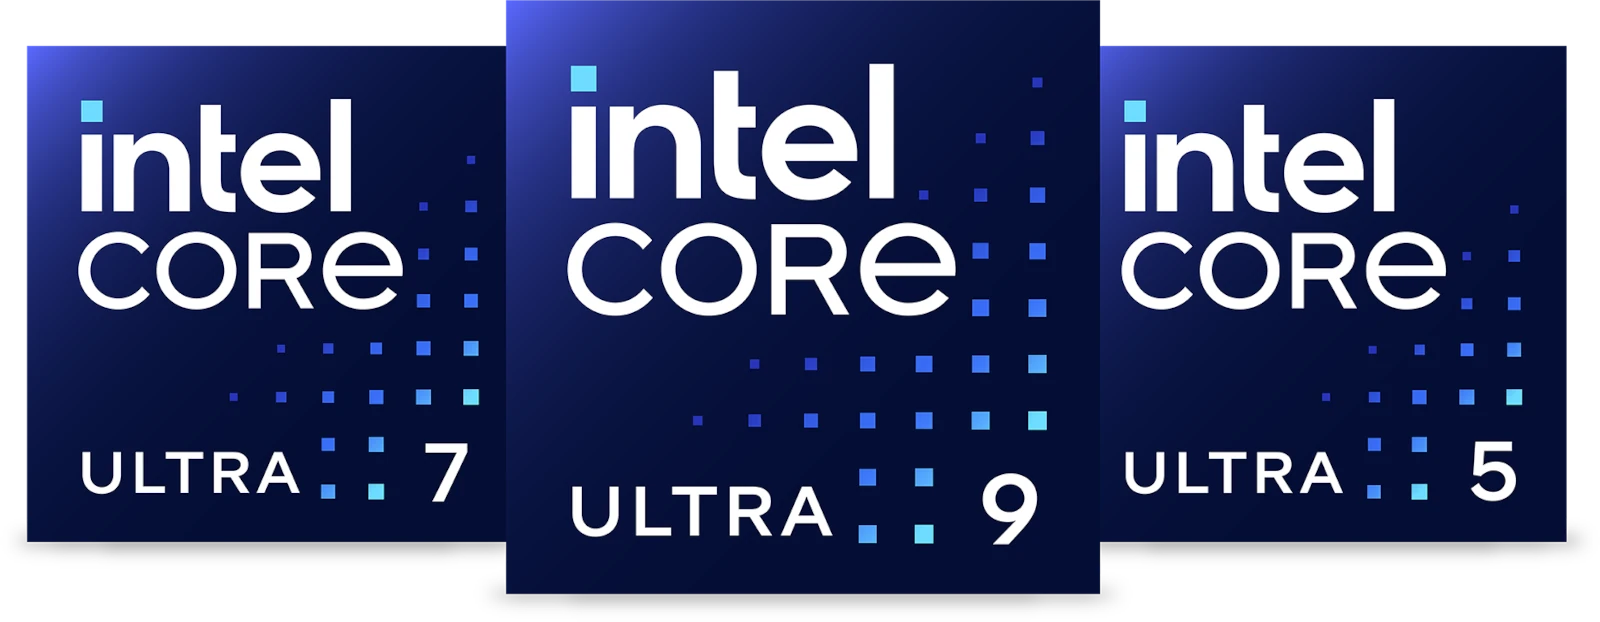 Intel Core Ultra 5 7 9